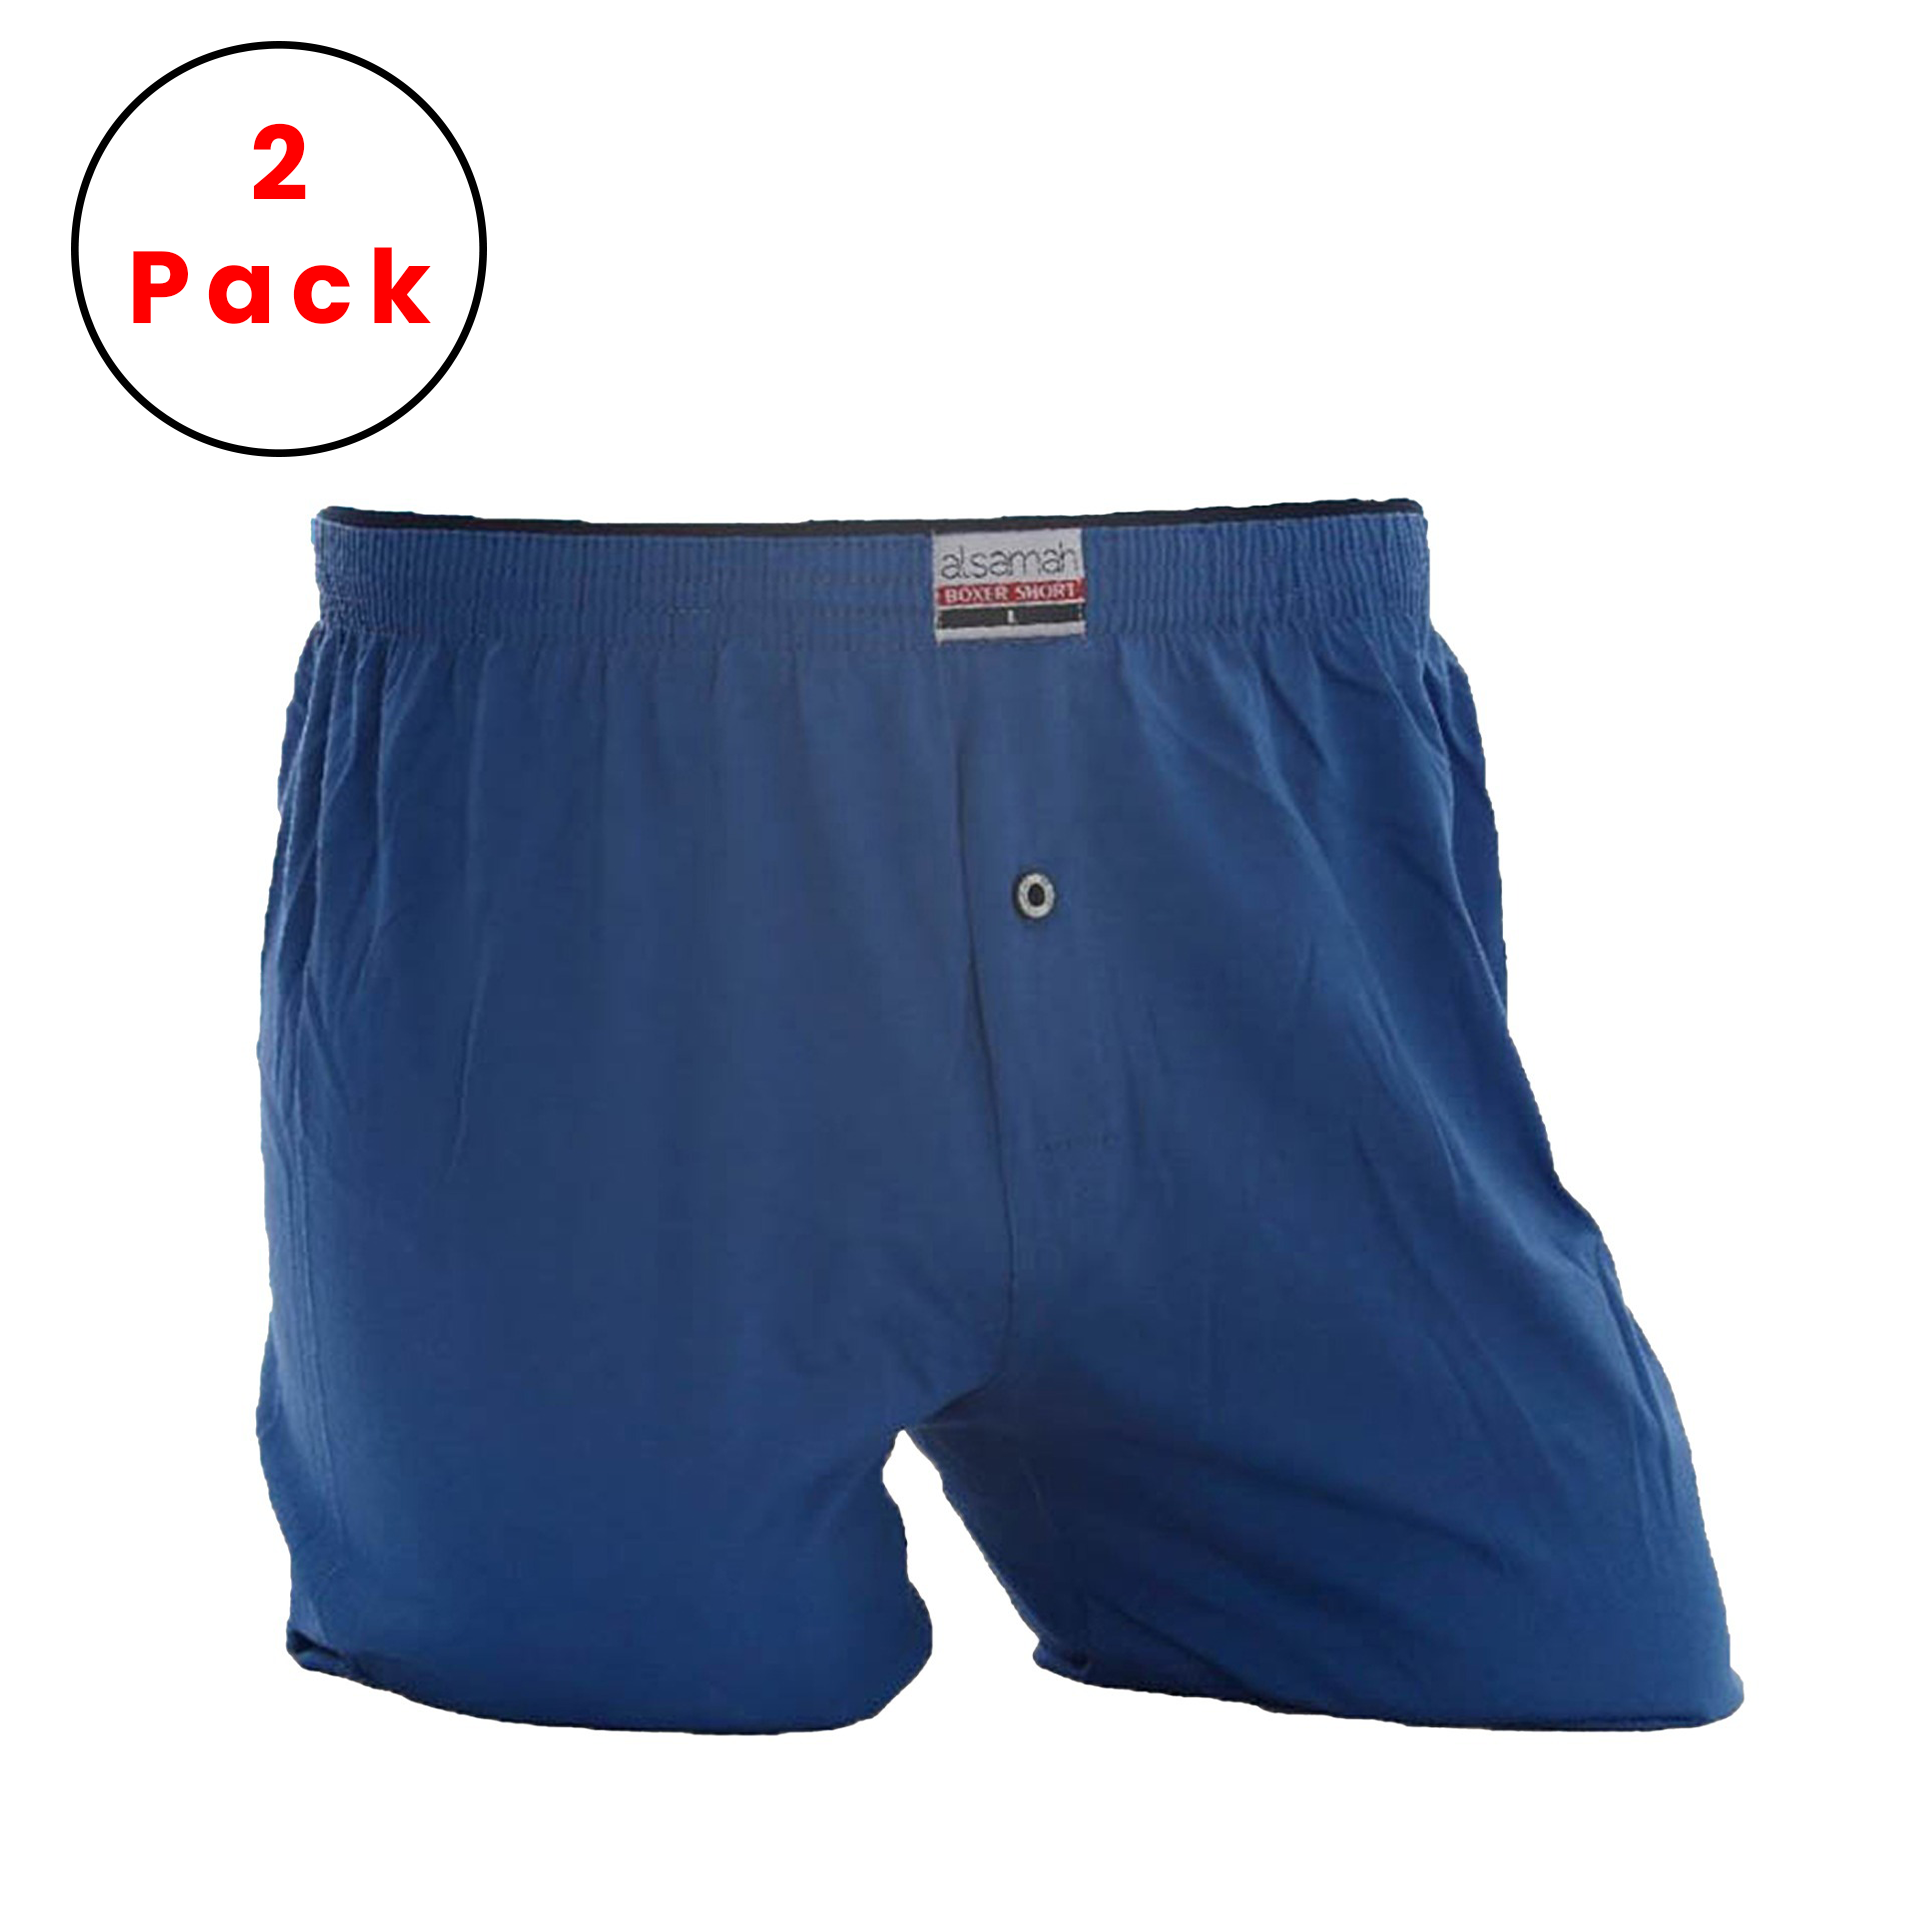 2-Pack 100% Cotton Men's Short